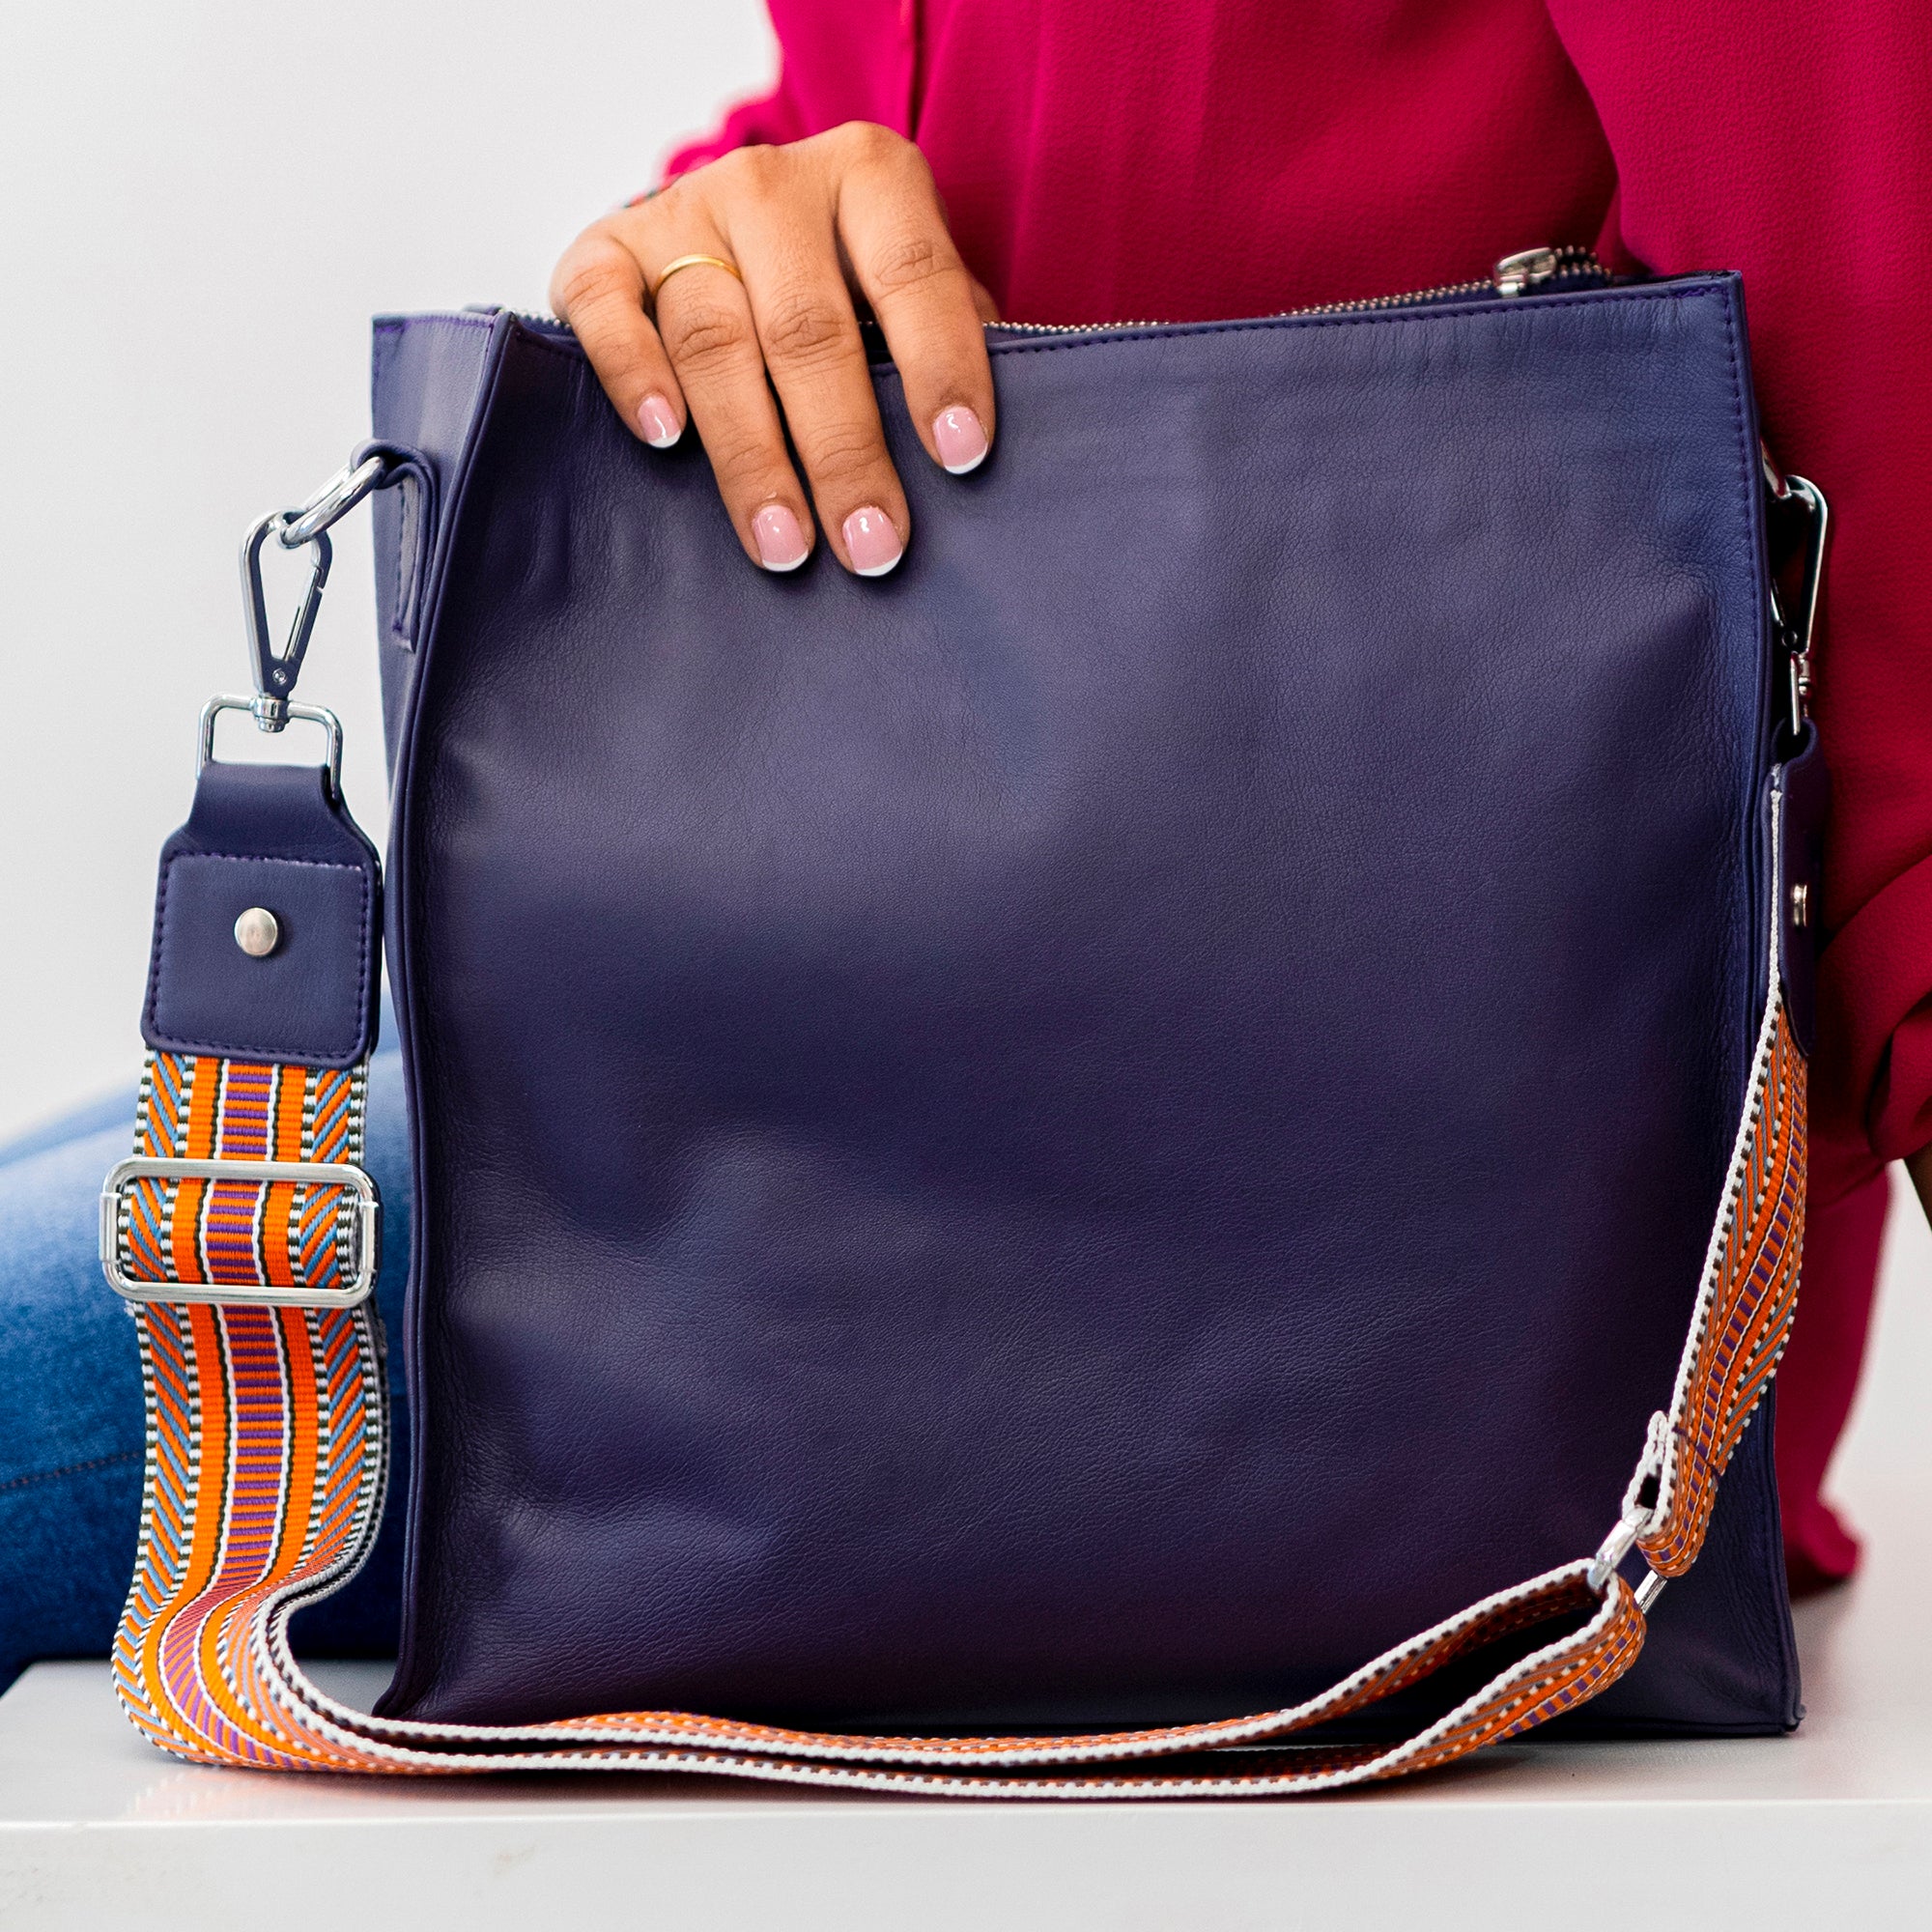 Vegan handbag, turquoise - teal tote, work bag, business bag, shoulder bag,  faux leather handbag, vinyl satchel, purse, ready to ship